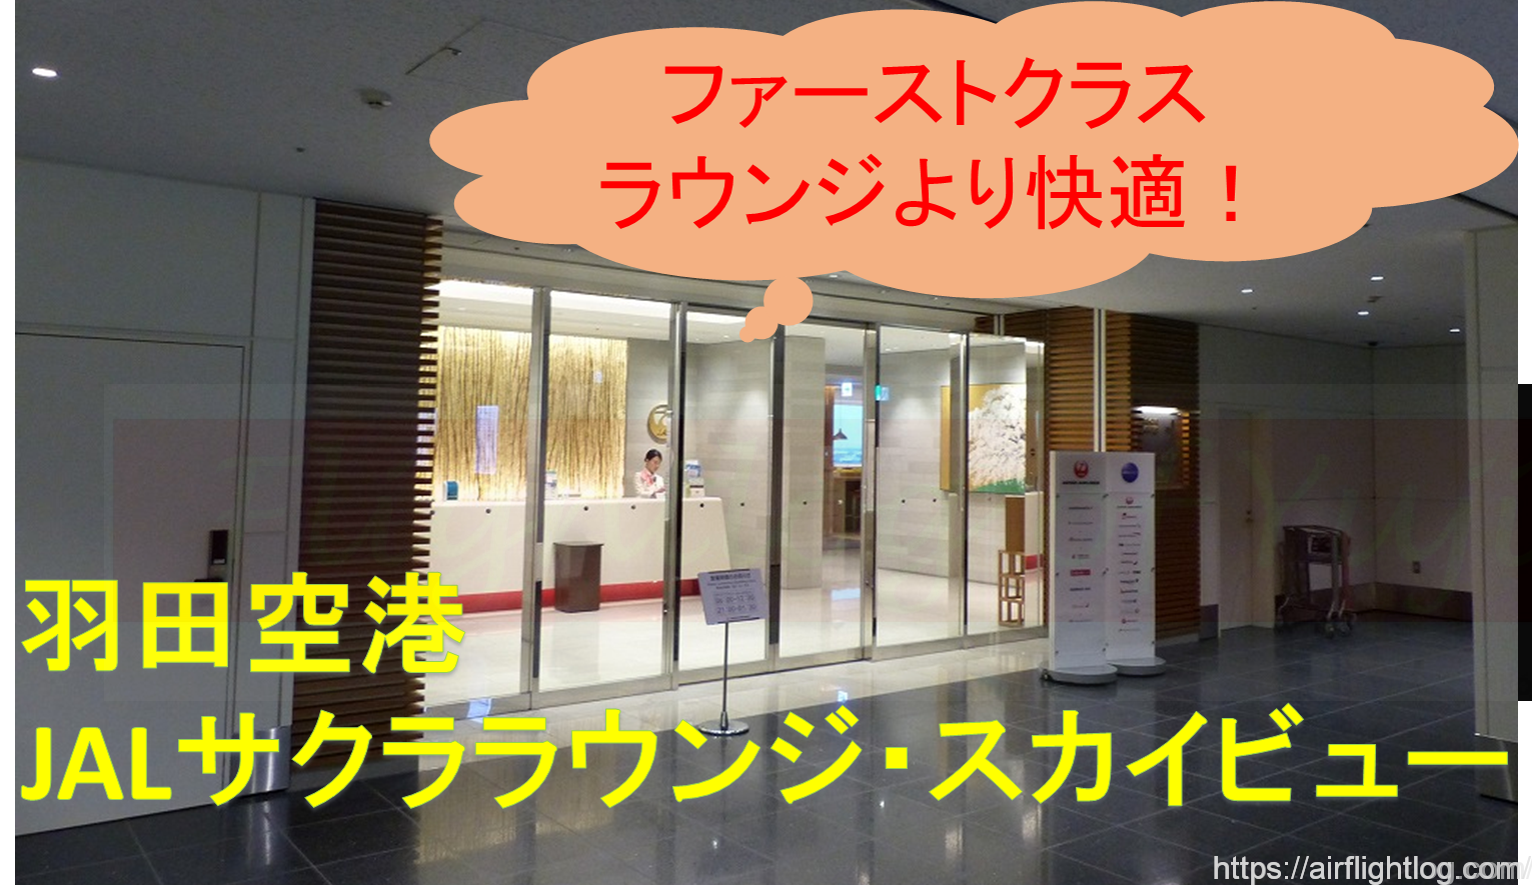 サクラ ラウンジ 空港 羽田 JALのサクララウンジに入る方法